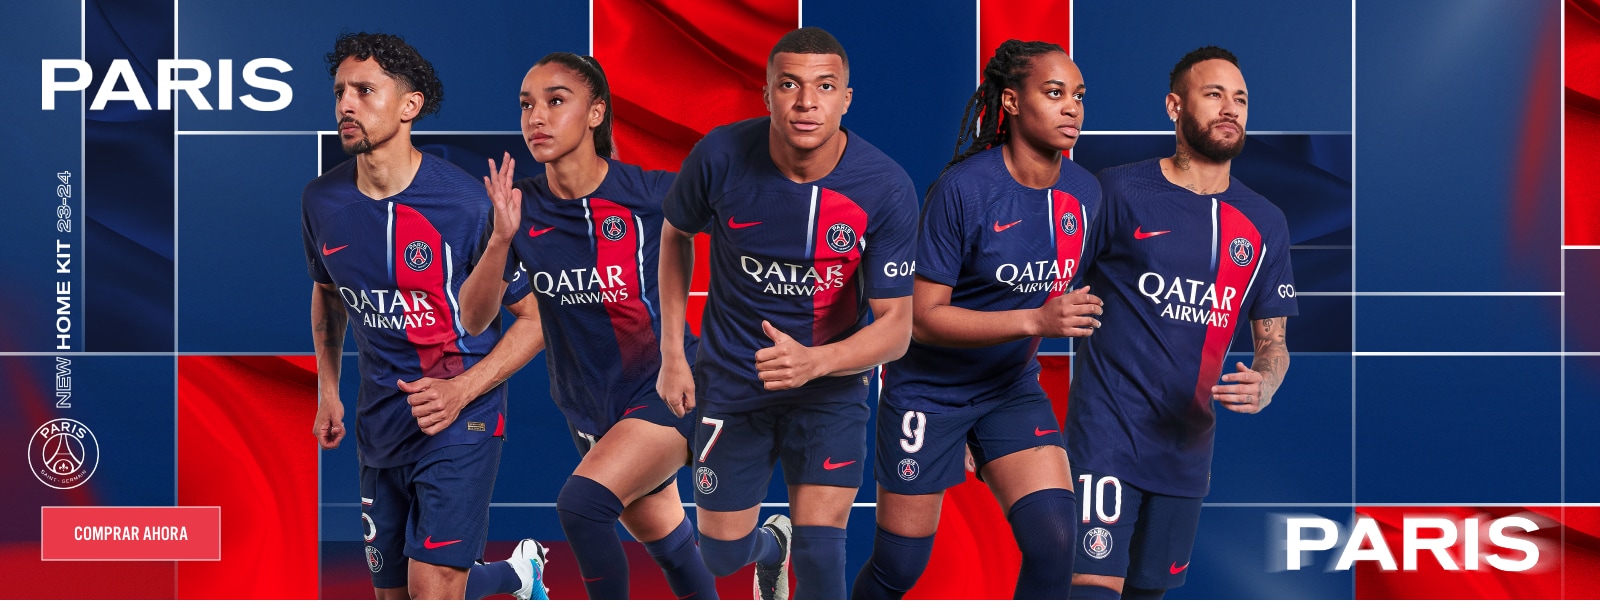 Tienda en línea Paris Saint-Germain | Kits de PSG, Ropa y merchandising de PSG | Tienda oficial de PSG